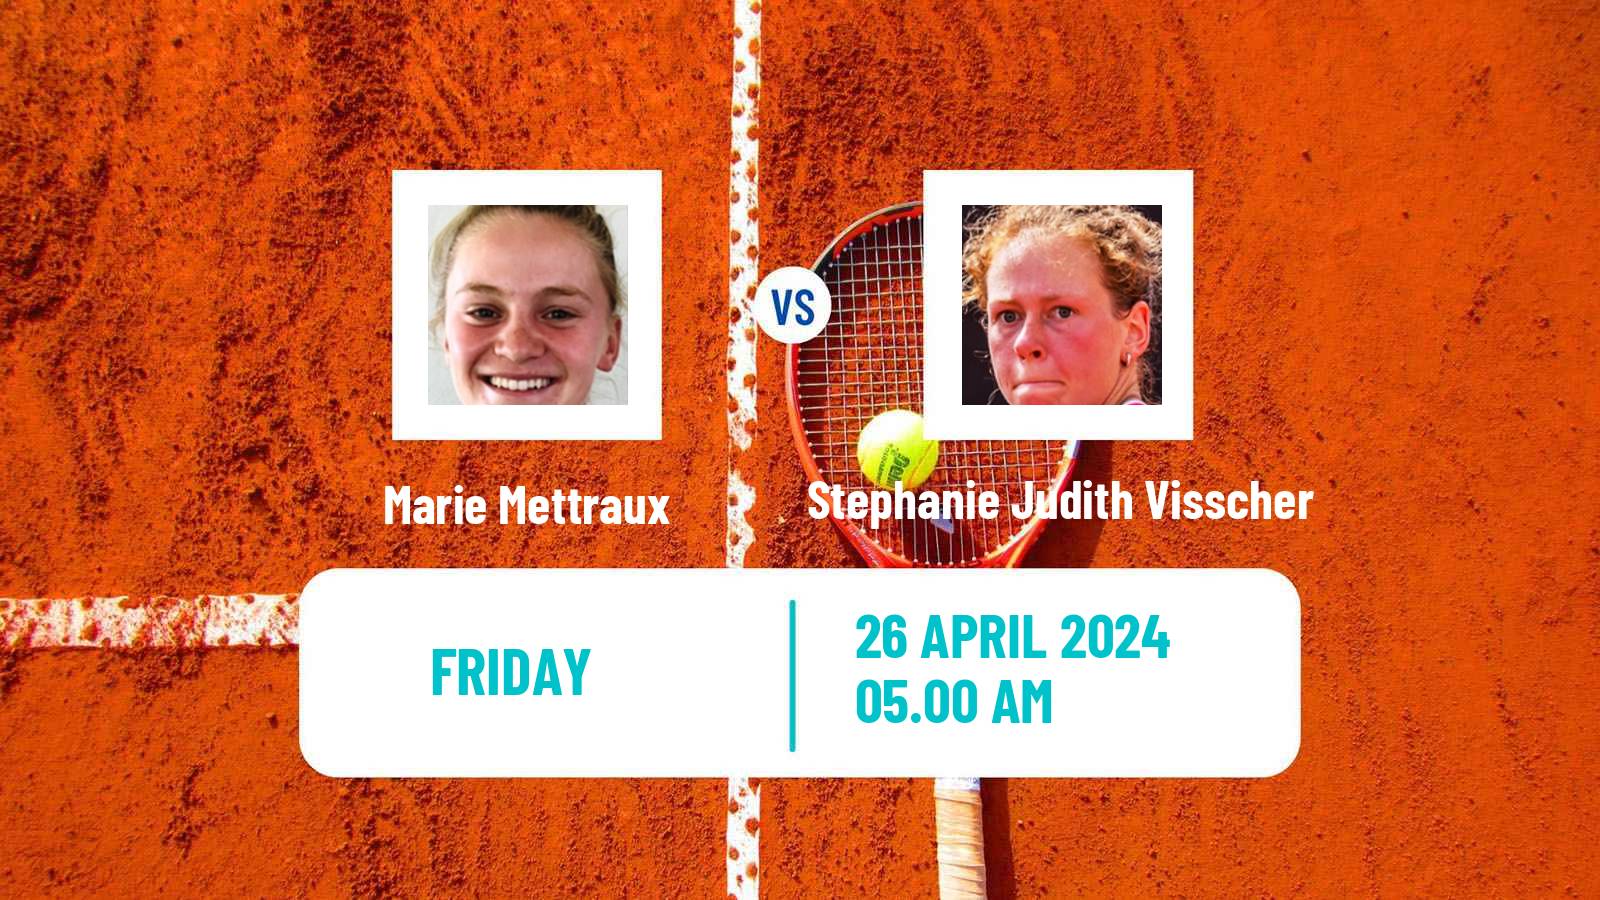 Tennis ITF W15 Telde 4 Women Marie Mettraux - Stephanie Judith Visscher